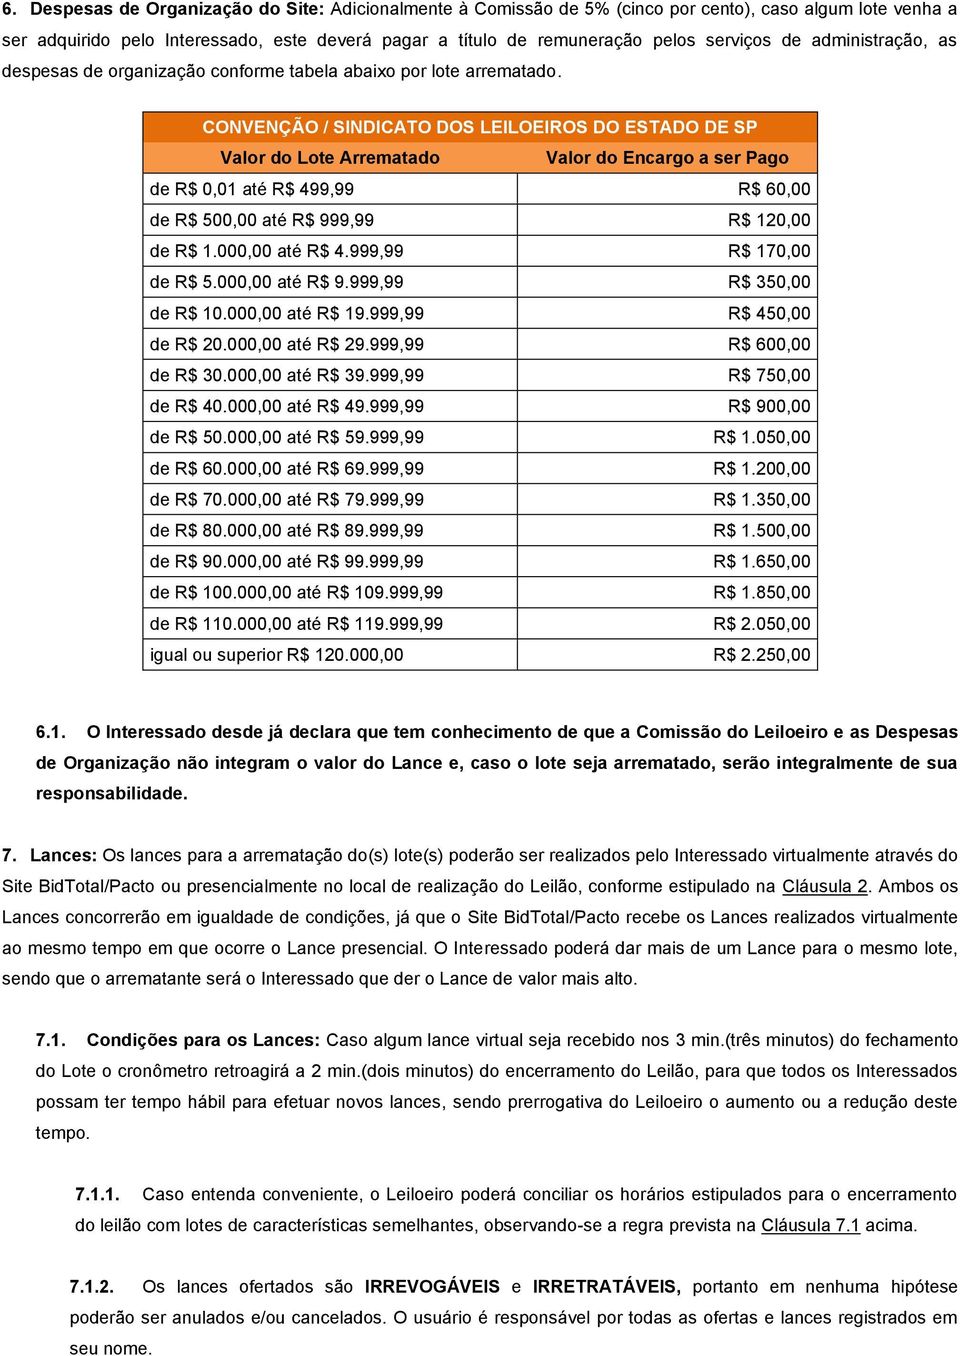 CONVENÇÃO / SINDICATO DOS LEILOEIROS DO ESTADO DE SP Valor do Lote Arrematado Valor do Encargo a ser Pago de R$ 0,01 até R$ 499,99 R$ 60,00 de R$ 500,00 até R$ 999,99 R$ 120,00 de R$ 1.